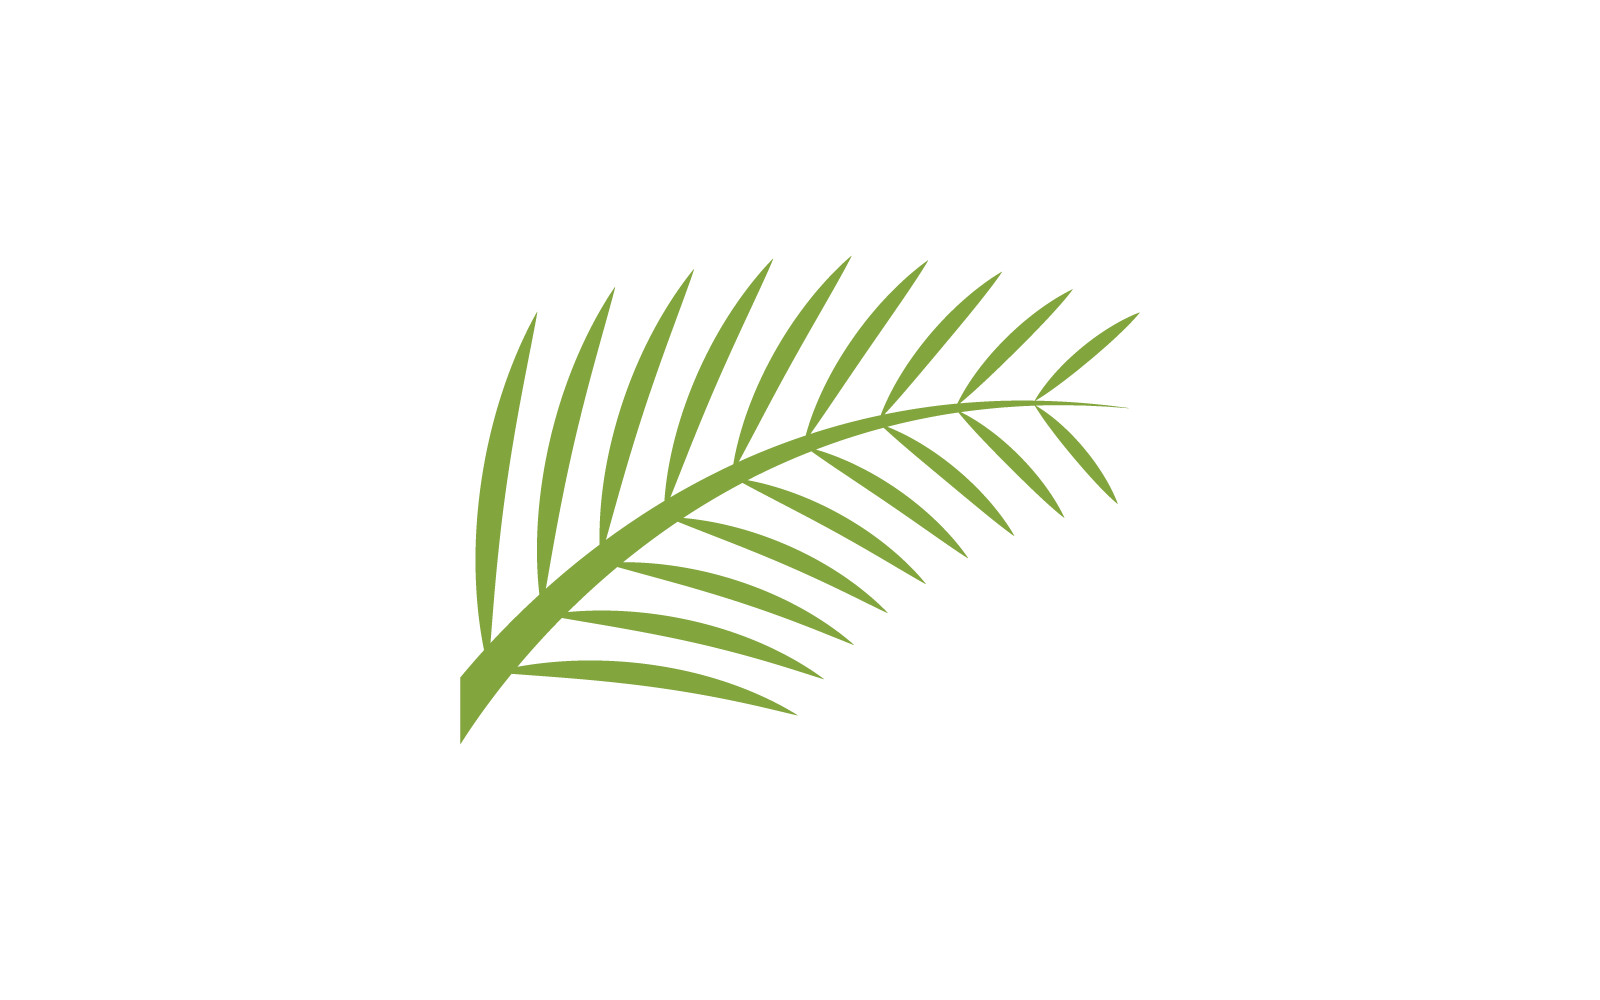 Palm tree leaf illustration logo template design